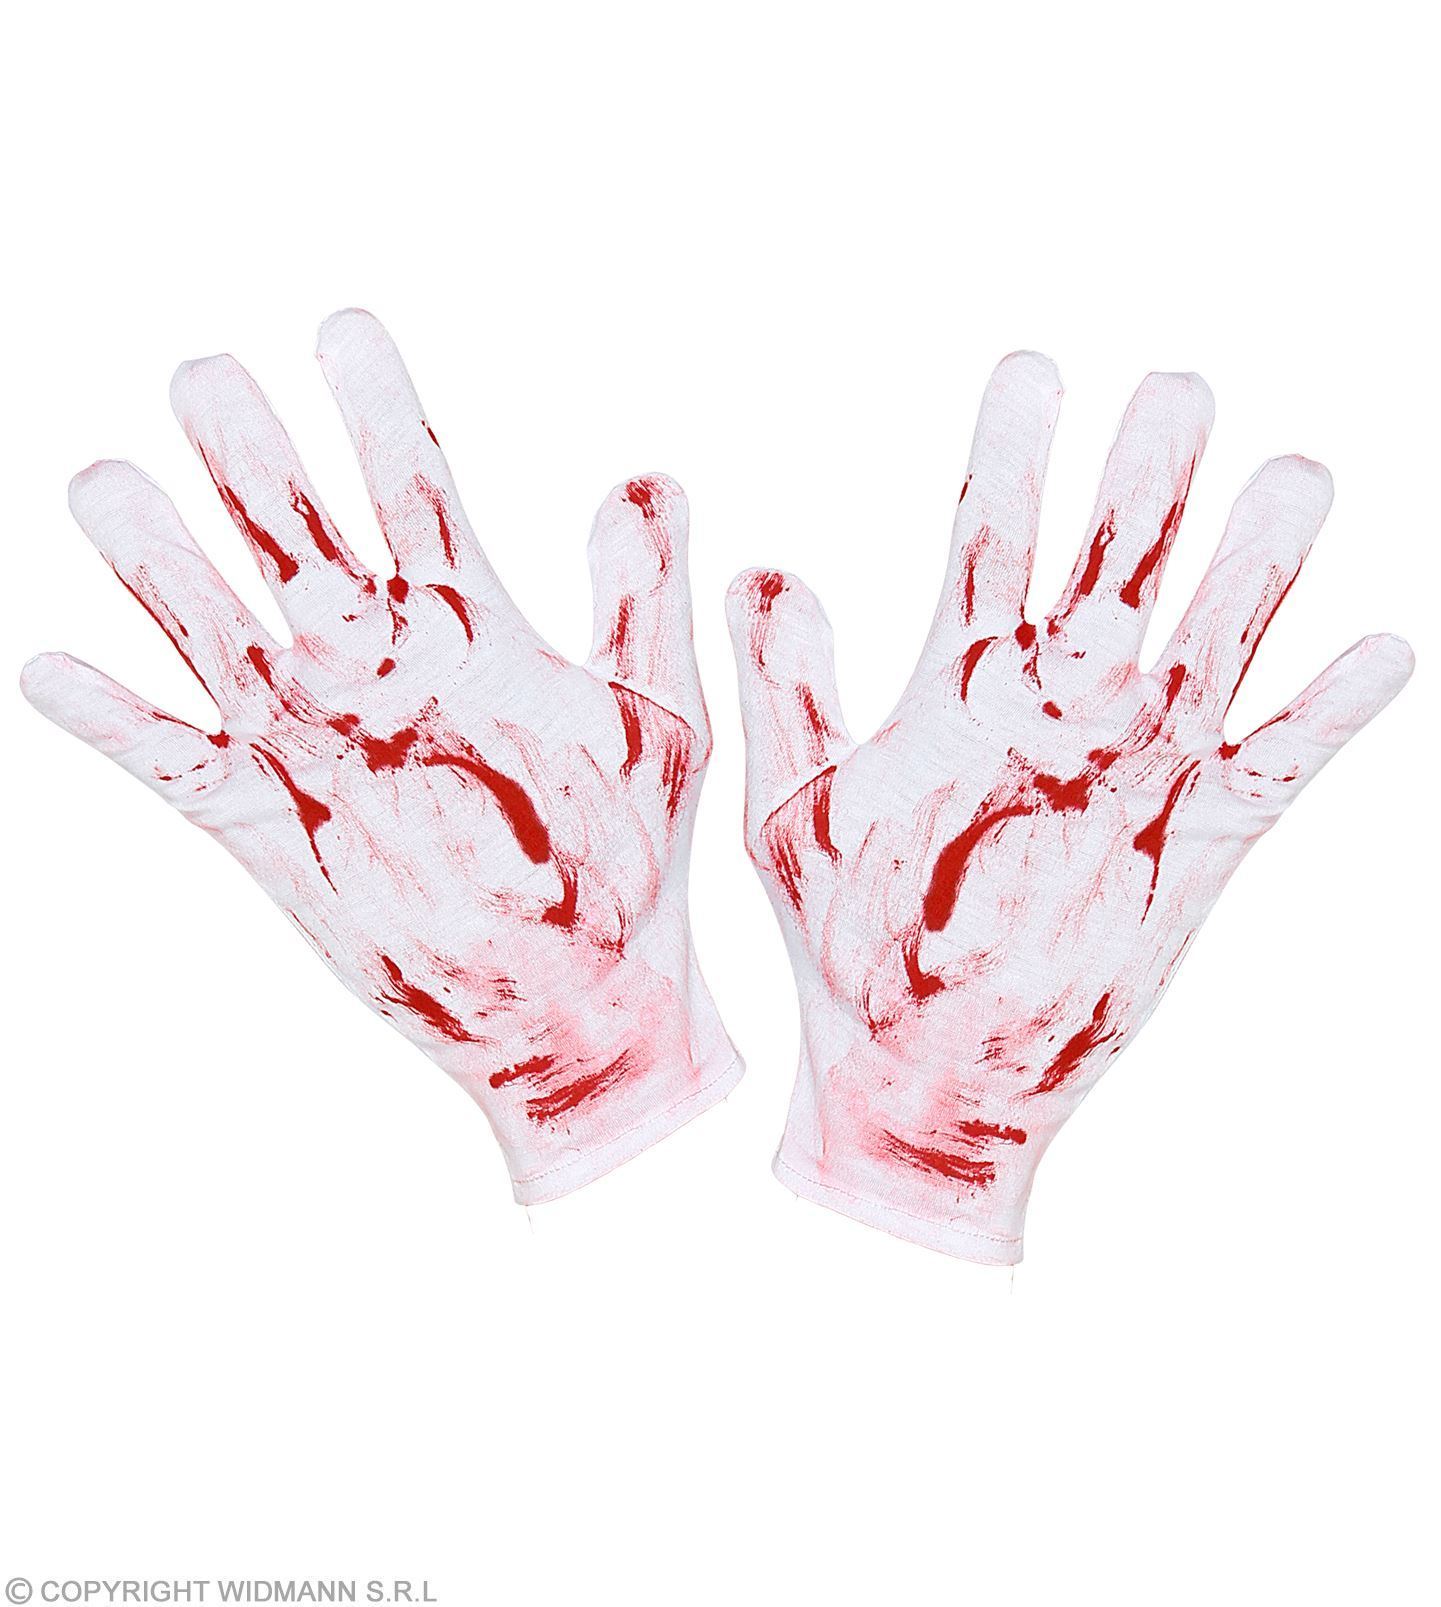 Bloederige handschoenen bloed aan handschoenen